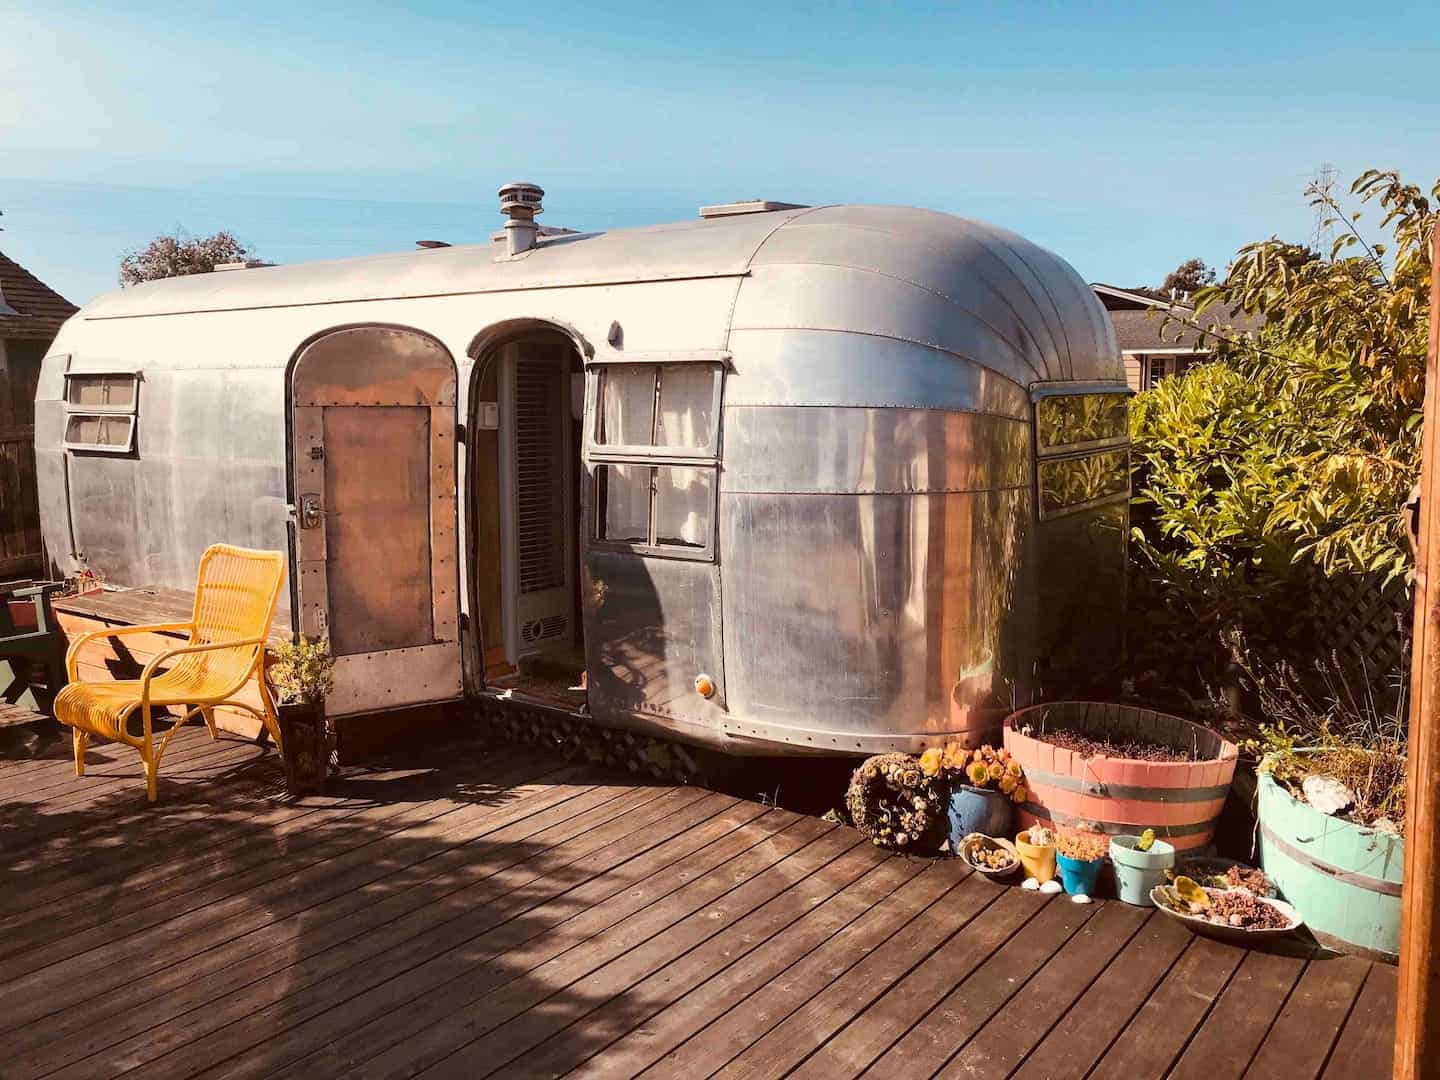 Image of Airbnb rental in Eureka, California